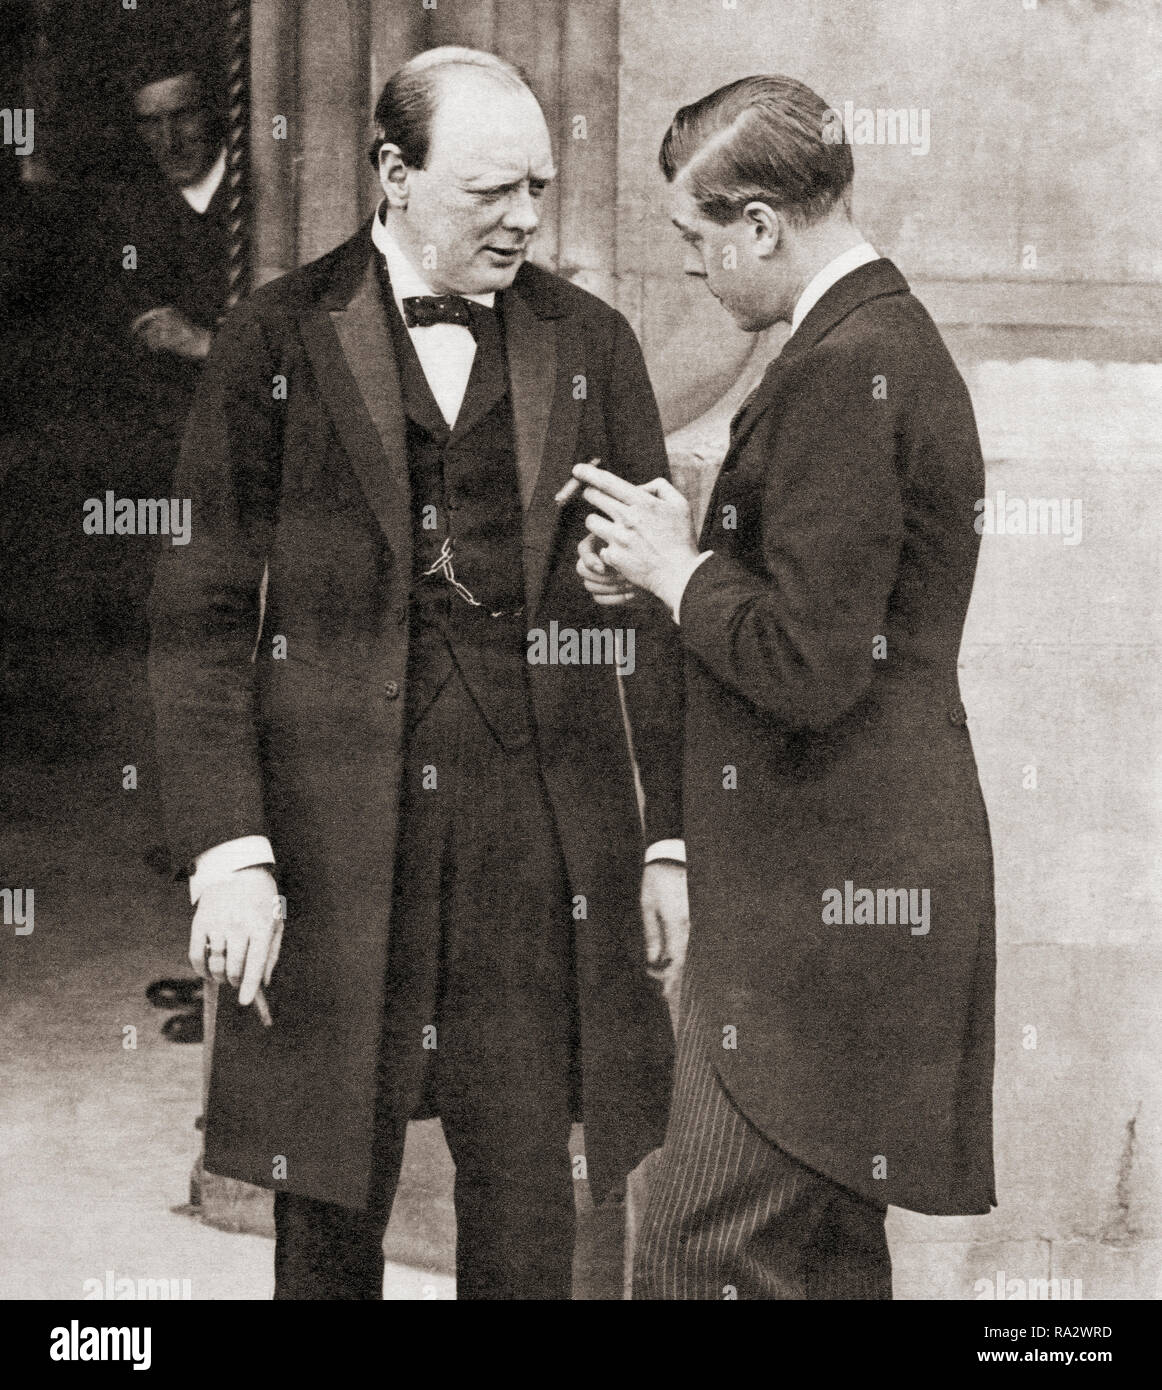 Winston Churchill, vu ici en 1919 avec le Prince de Galles, futur Édouard VIII. Sir Winston Leonard Spencer-Churchill, 1874 -1965. Homme politique, homme d'État britannique, officier de l'armée, et l'écrivain, qui fut Premier Ministre du Royaume-Uni de 1940 à 1945 et de nouveau de 1951 à 1955. Banque D'Images